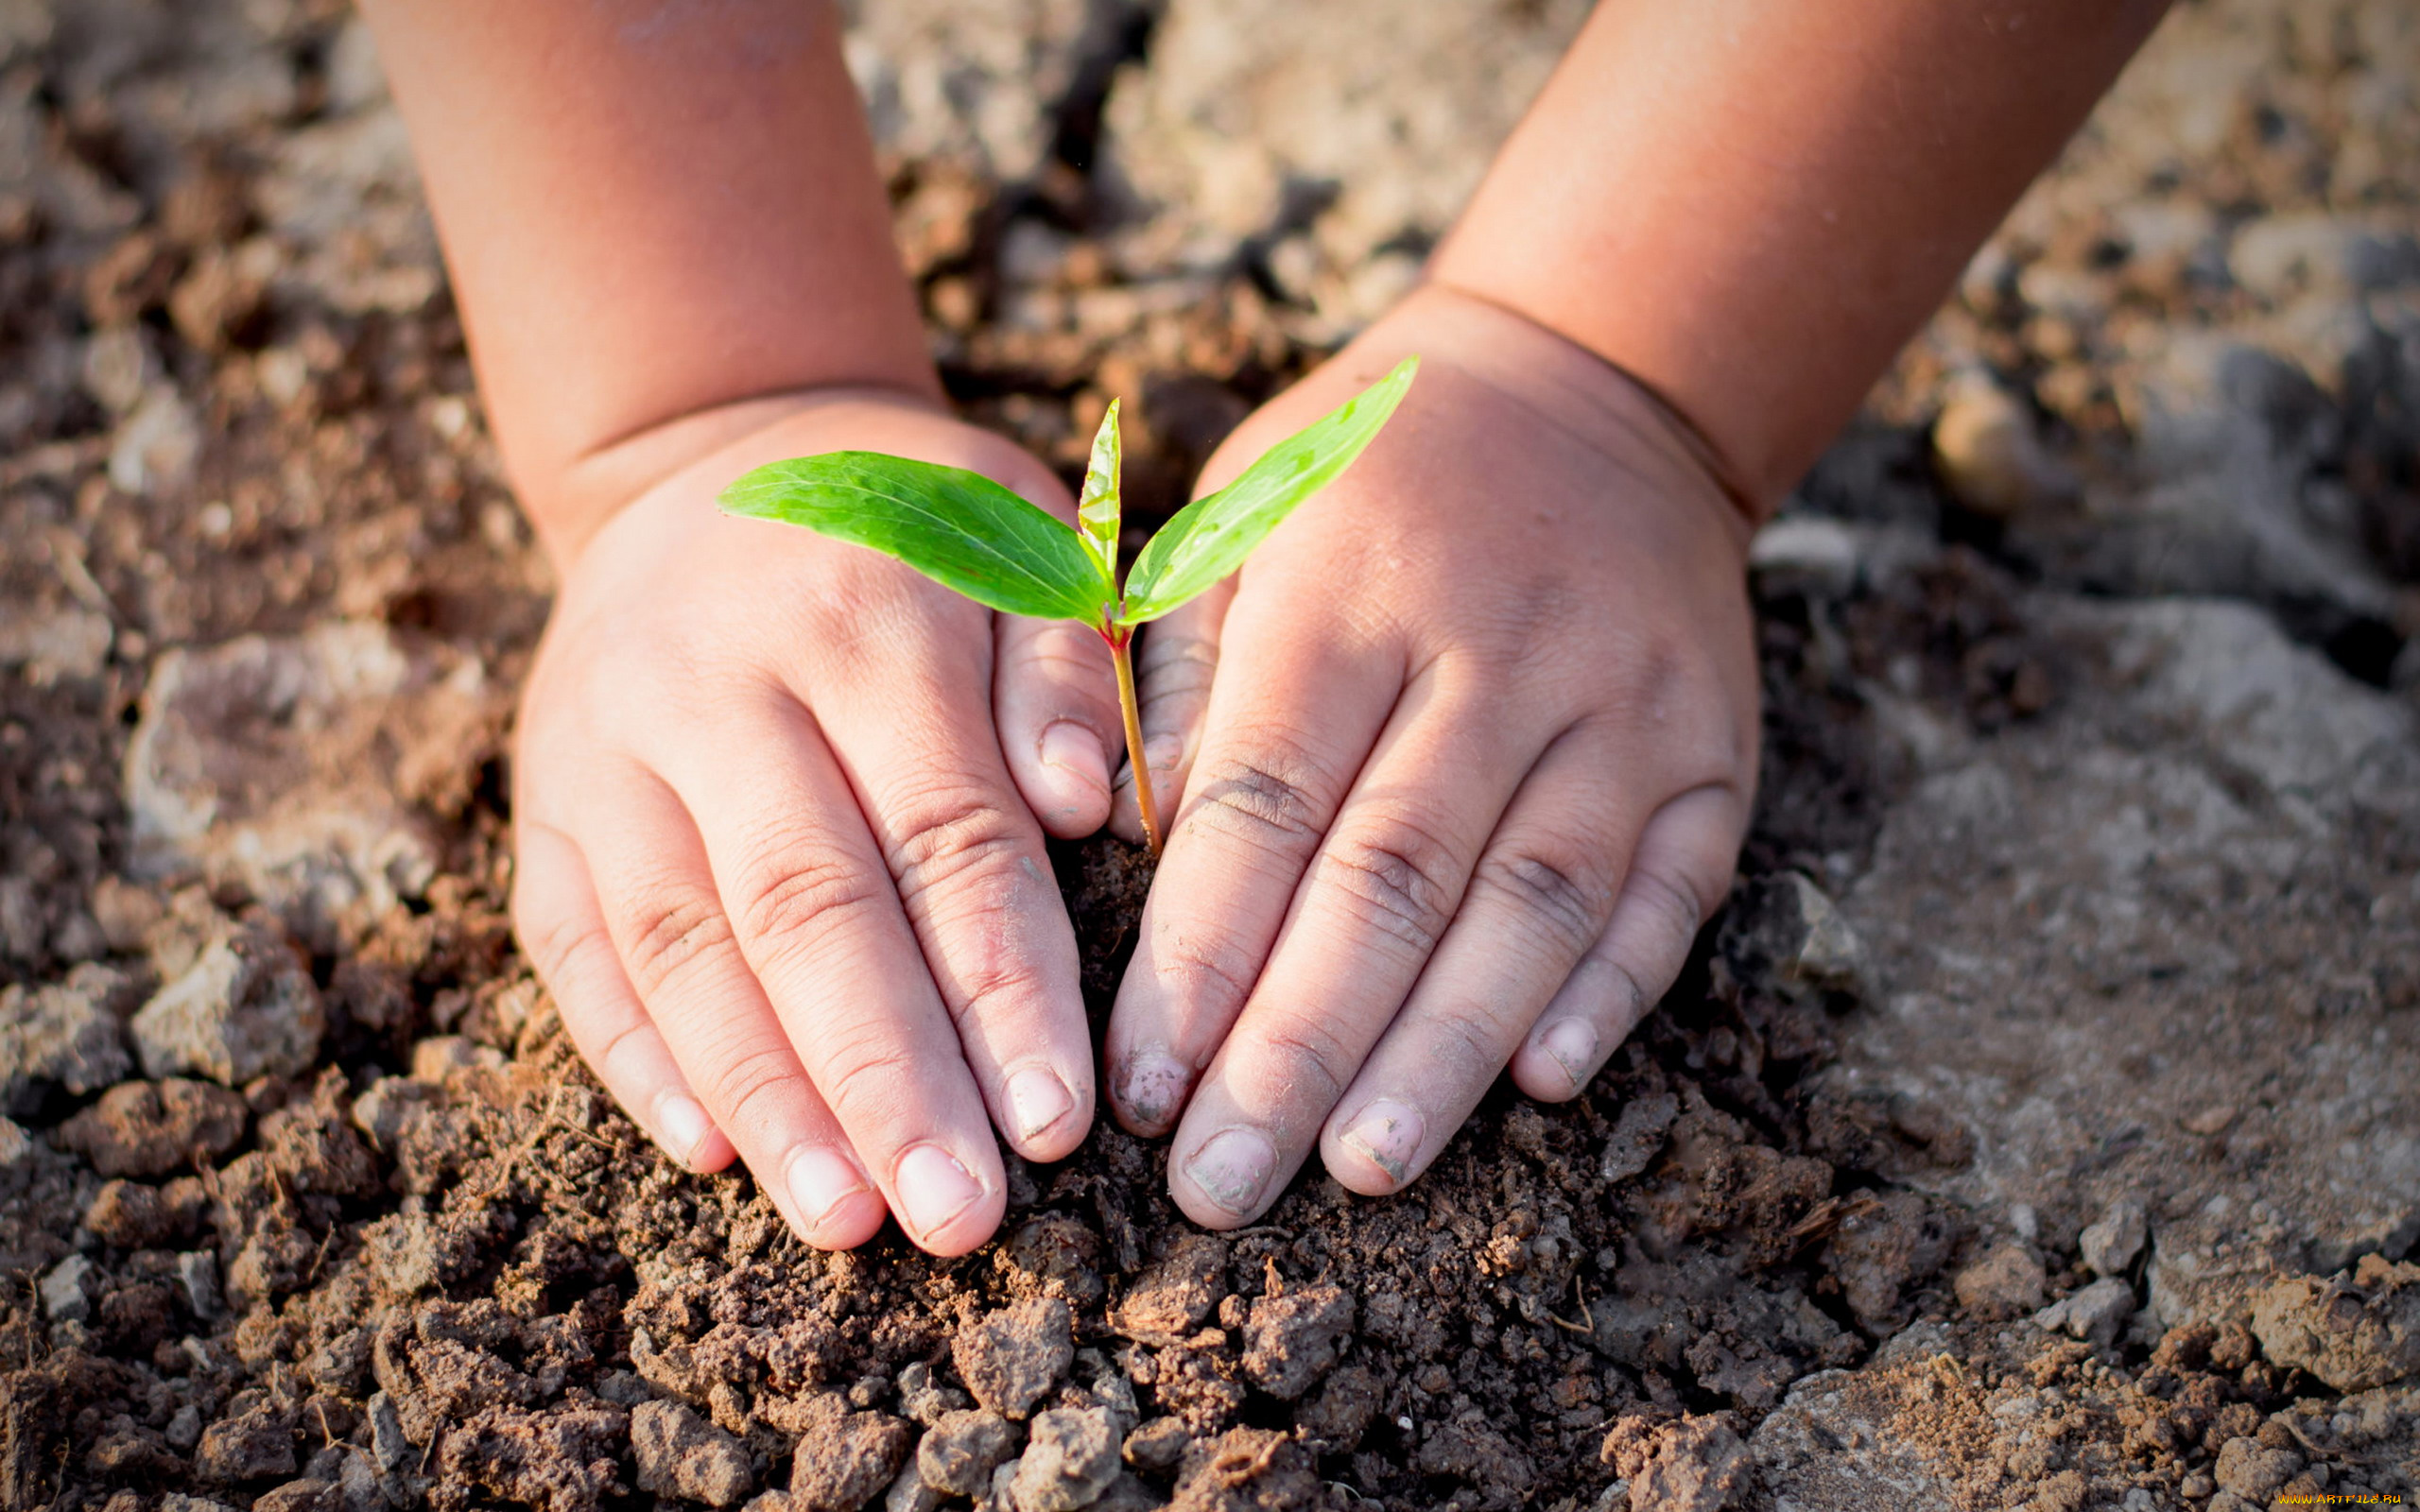 Бережно цветы. Бережное отношение к природе. Ребенок с росточками в руках. Забота об окружающей среде. Эколог это для детей.